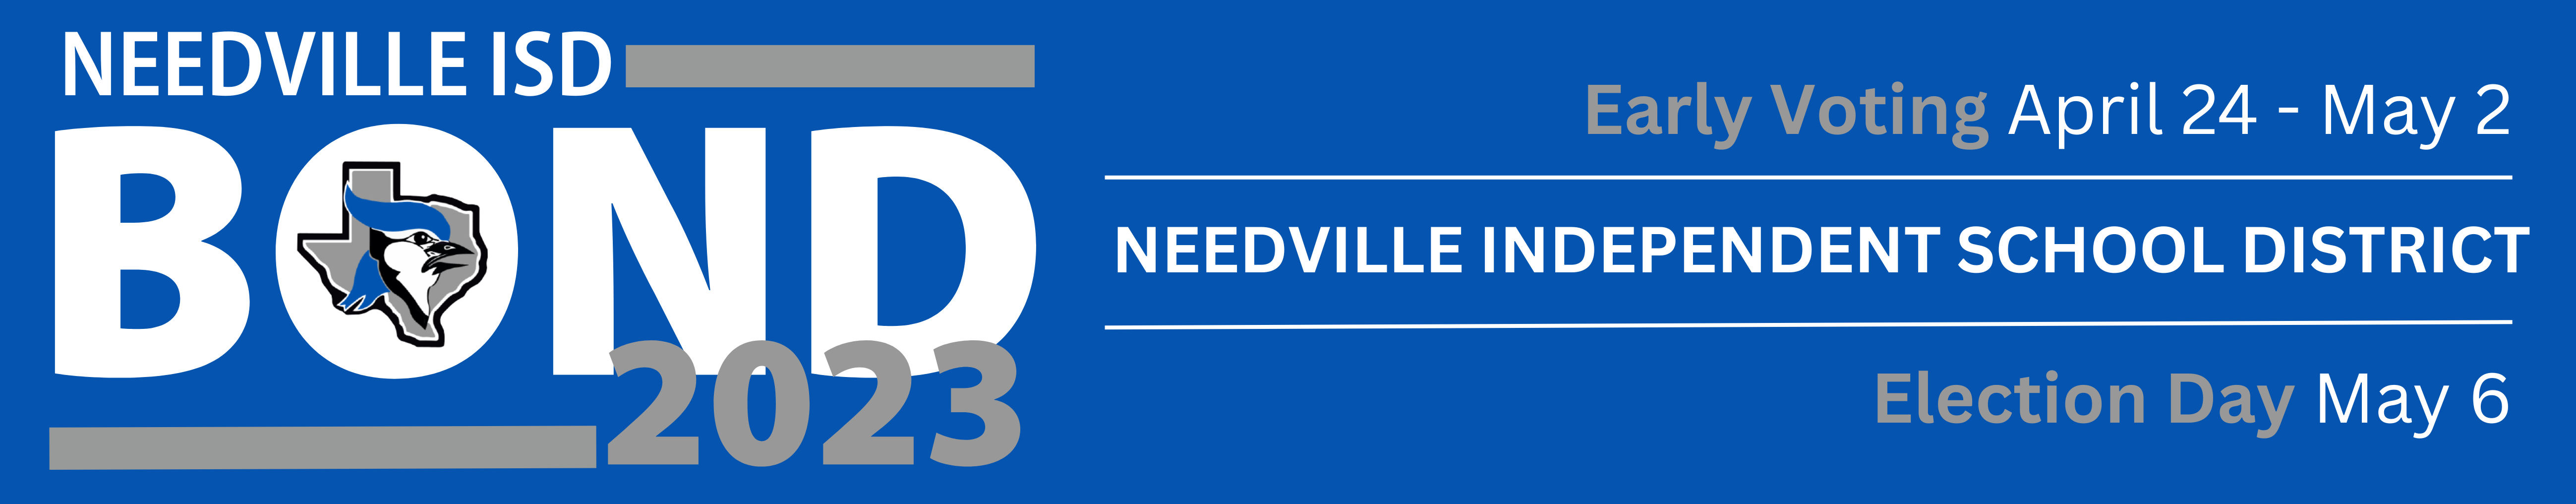 Needville ISD Bond